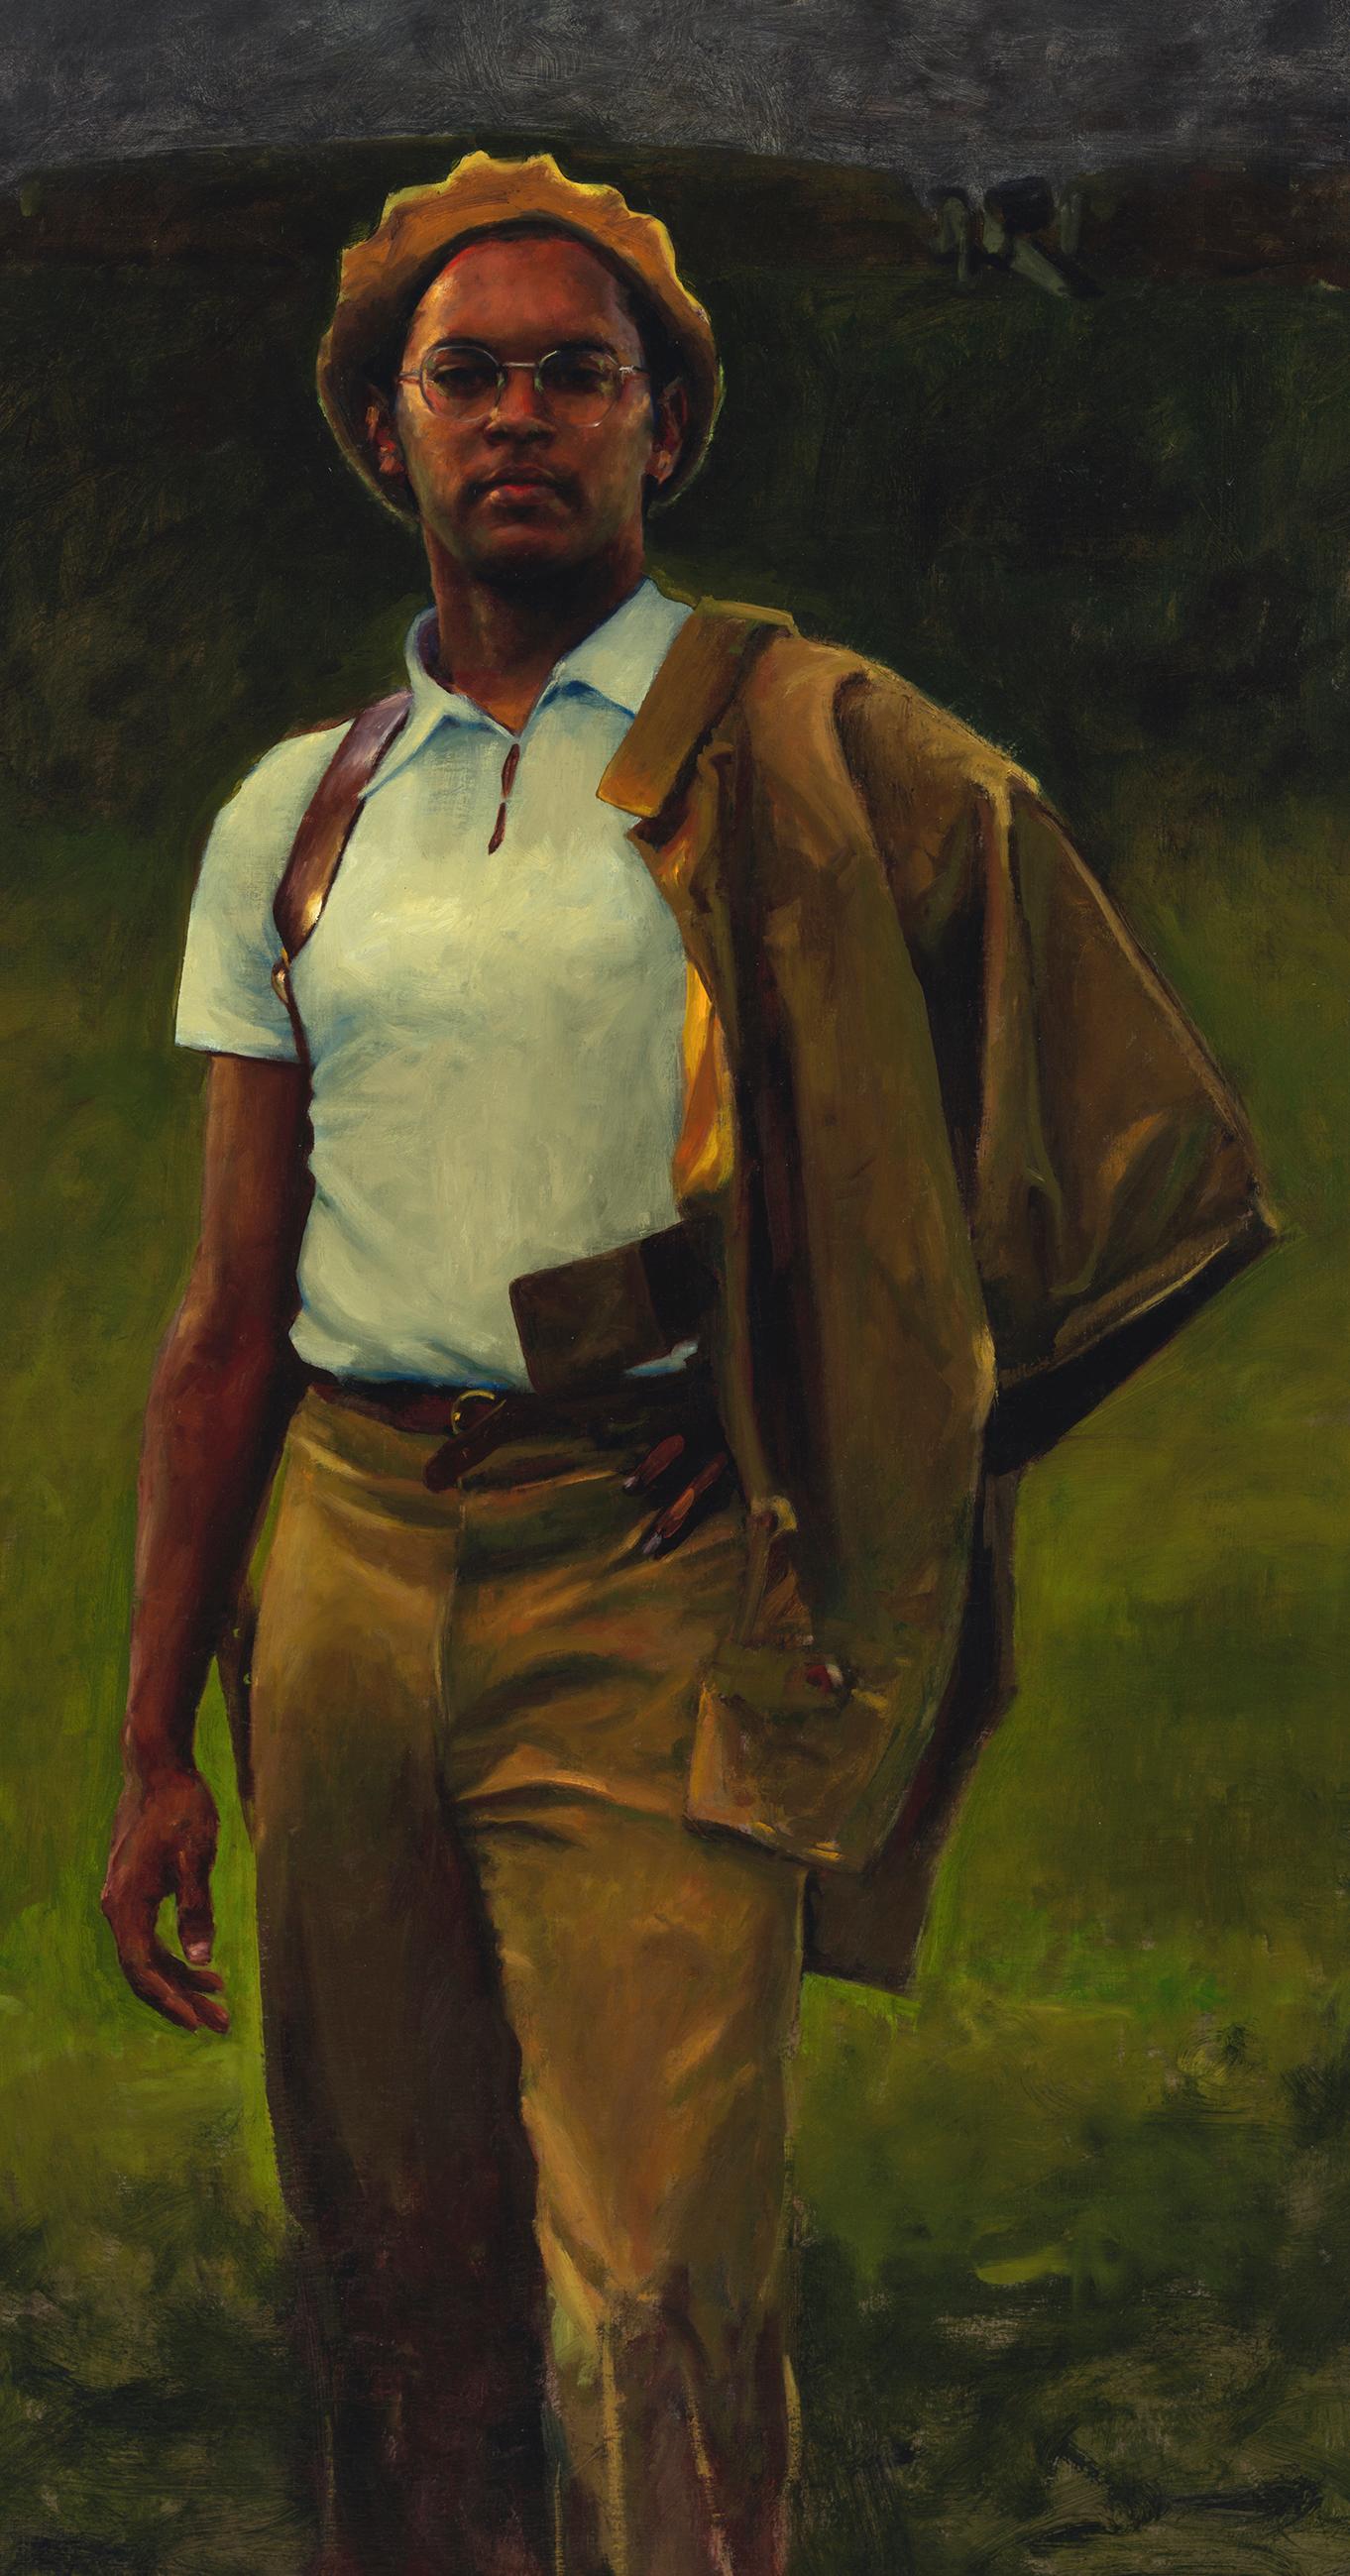 Salud Johnny - Inspirierendes Porträt eines einsamen Soldaten, der den Betrachter anschaut – Painting von William Blake (b. 1991) 